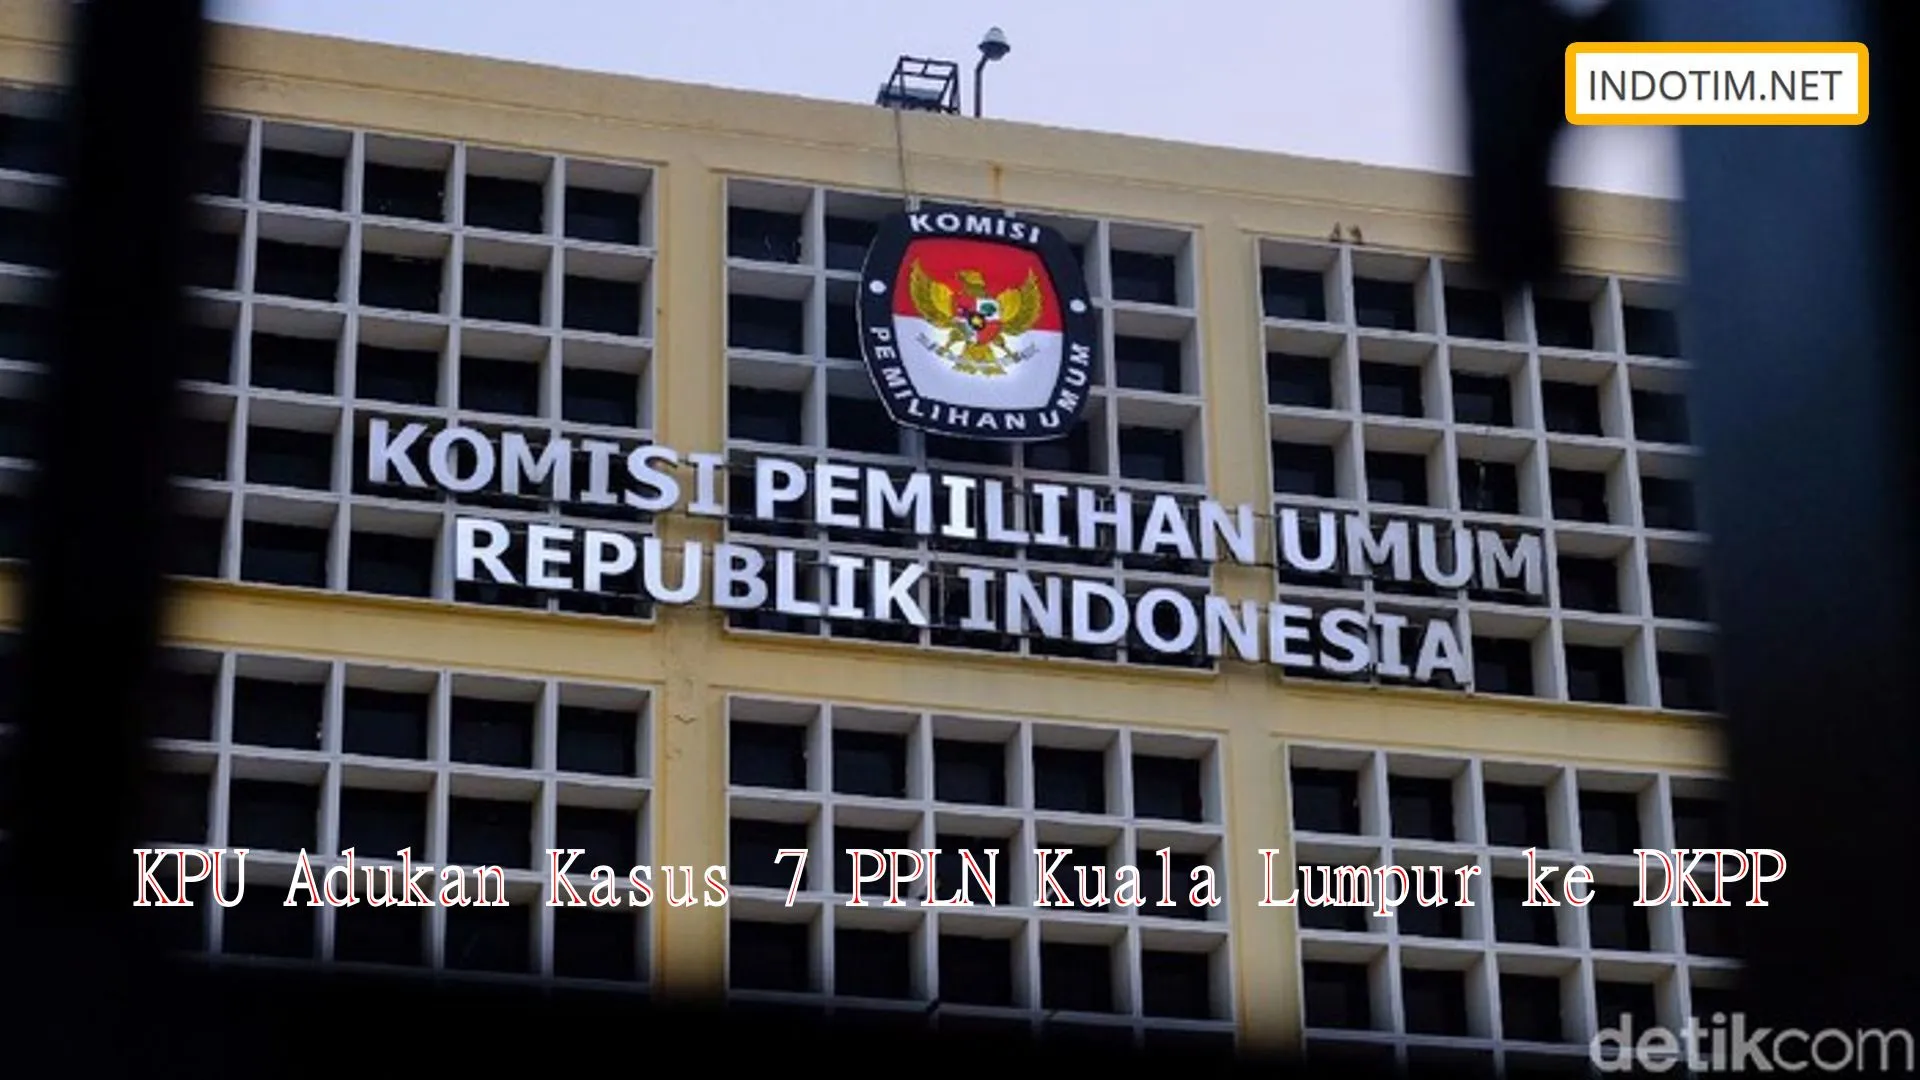 KPU Adukan Kasus 7 PPLN Kuala Lumpur ke DKPP